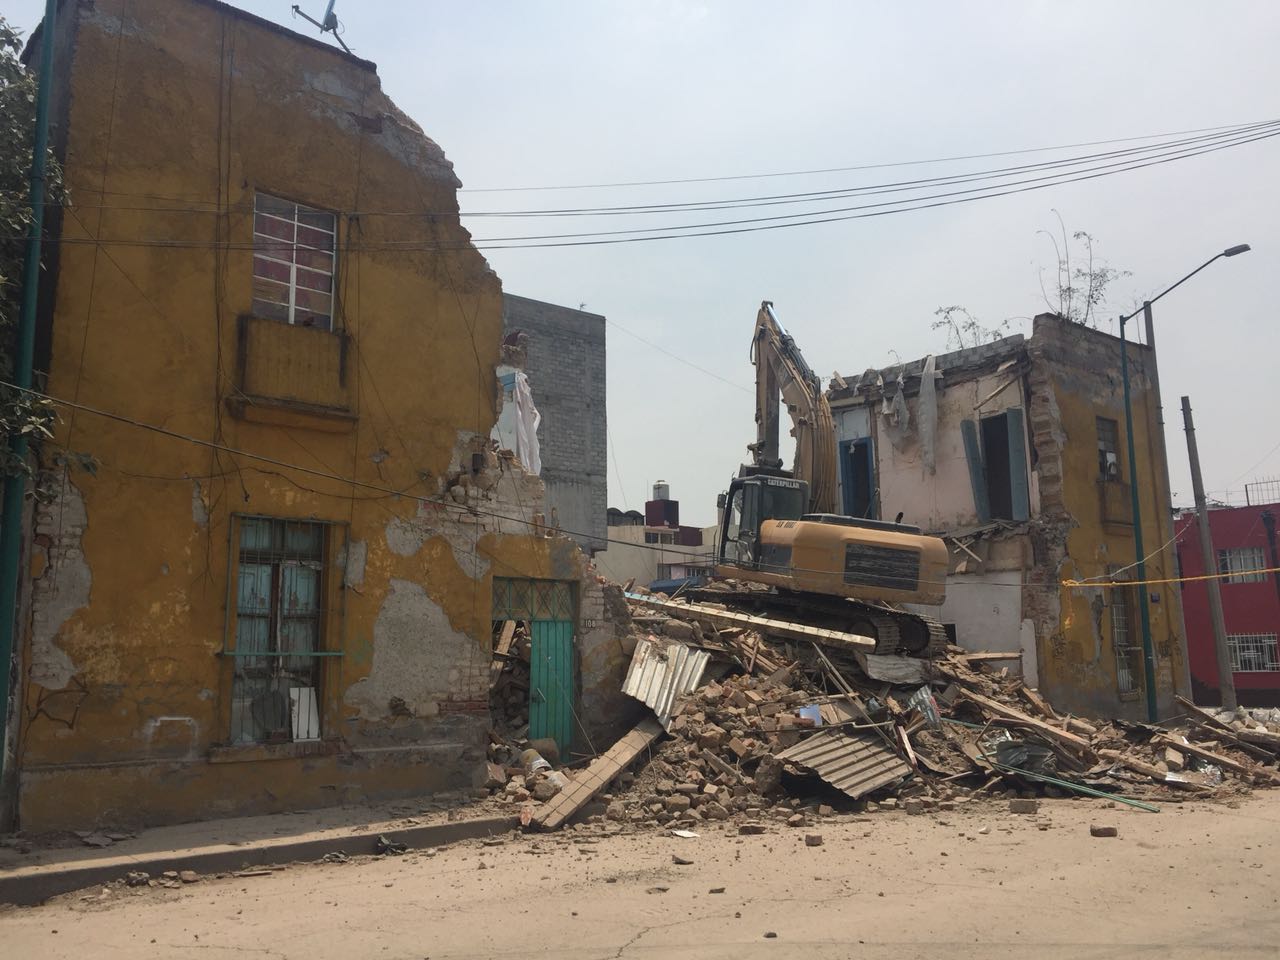 Concluyeron demolición de dos inmuebles en Cuauhtémoc